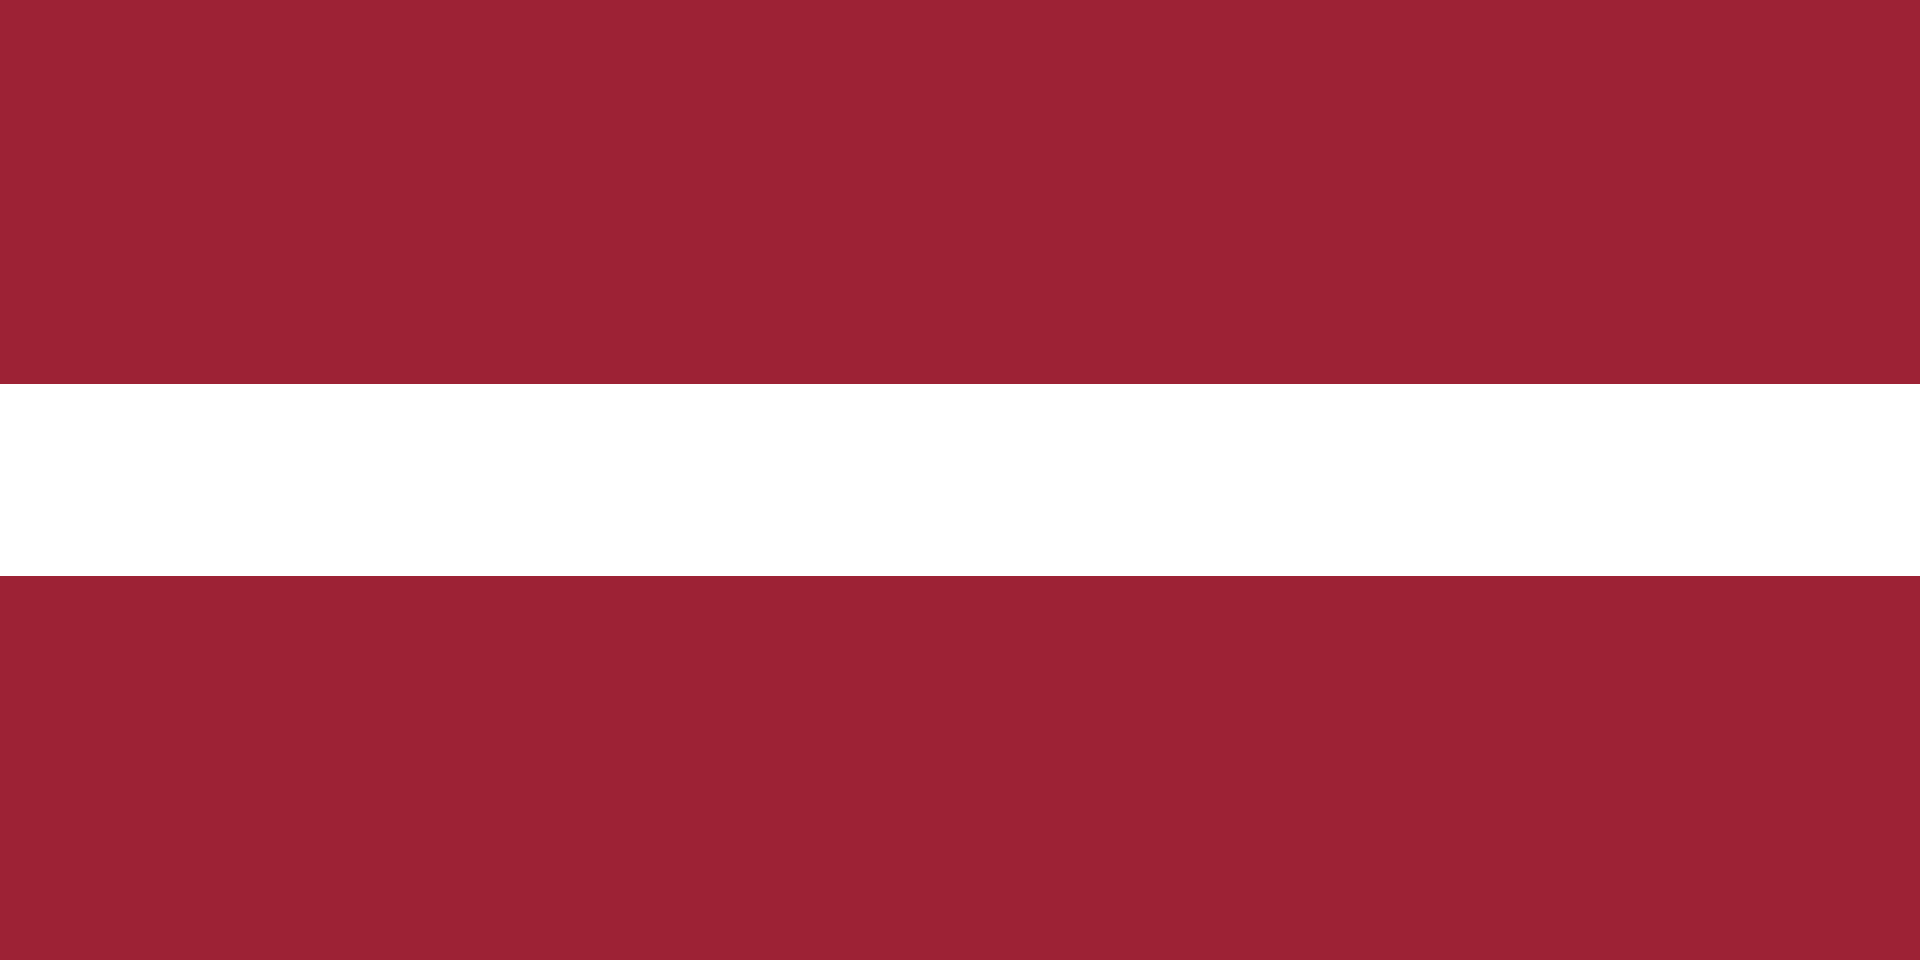 Hier sehen Sie die Flagge von Lettland